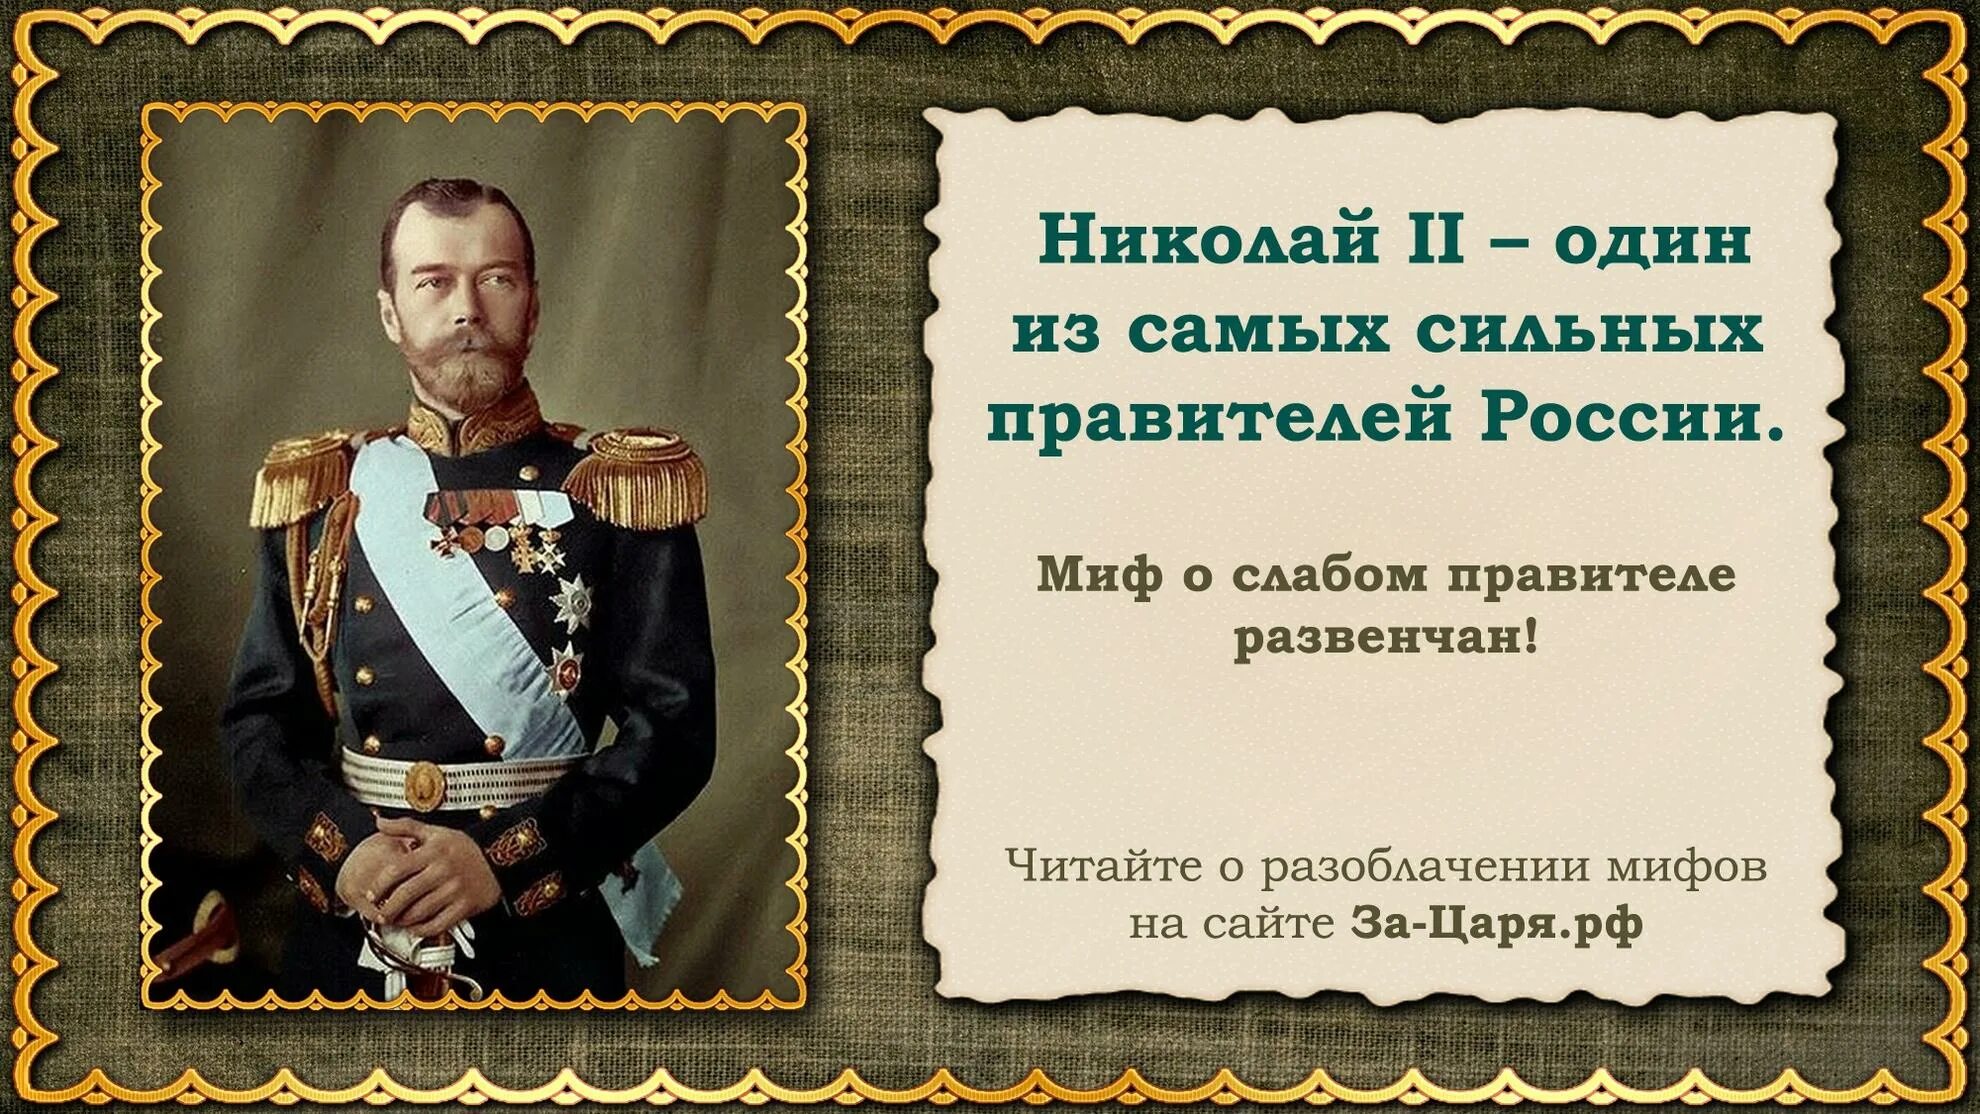 Интересные факты о Николае II.